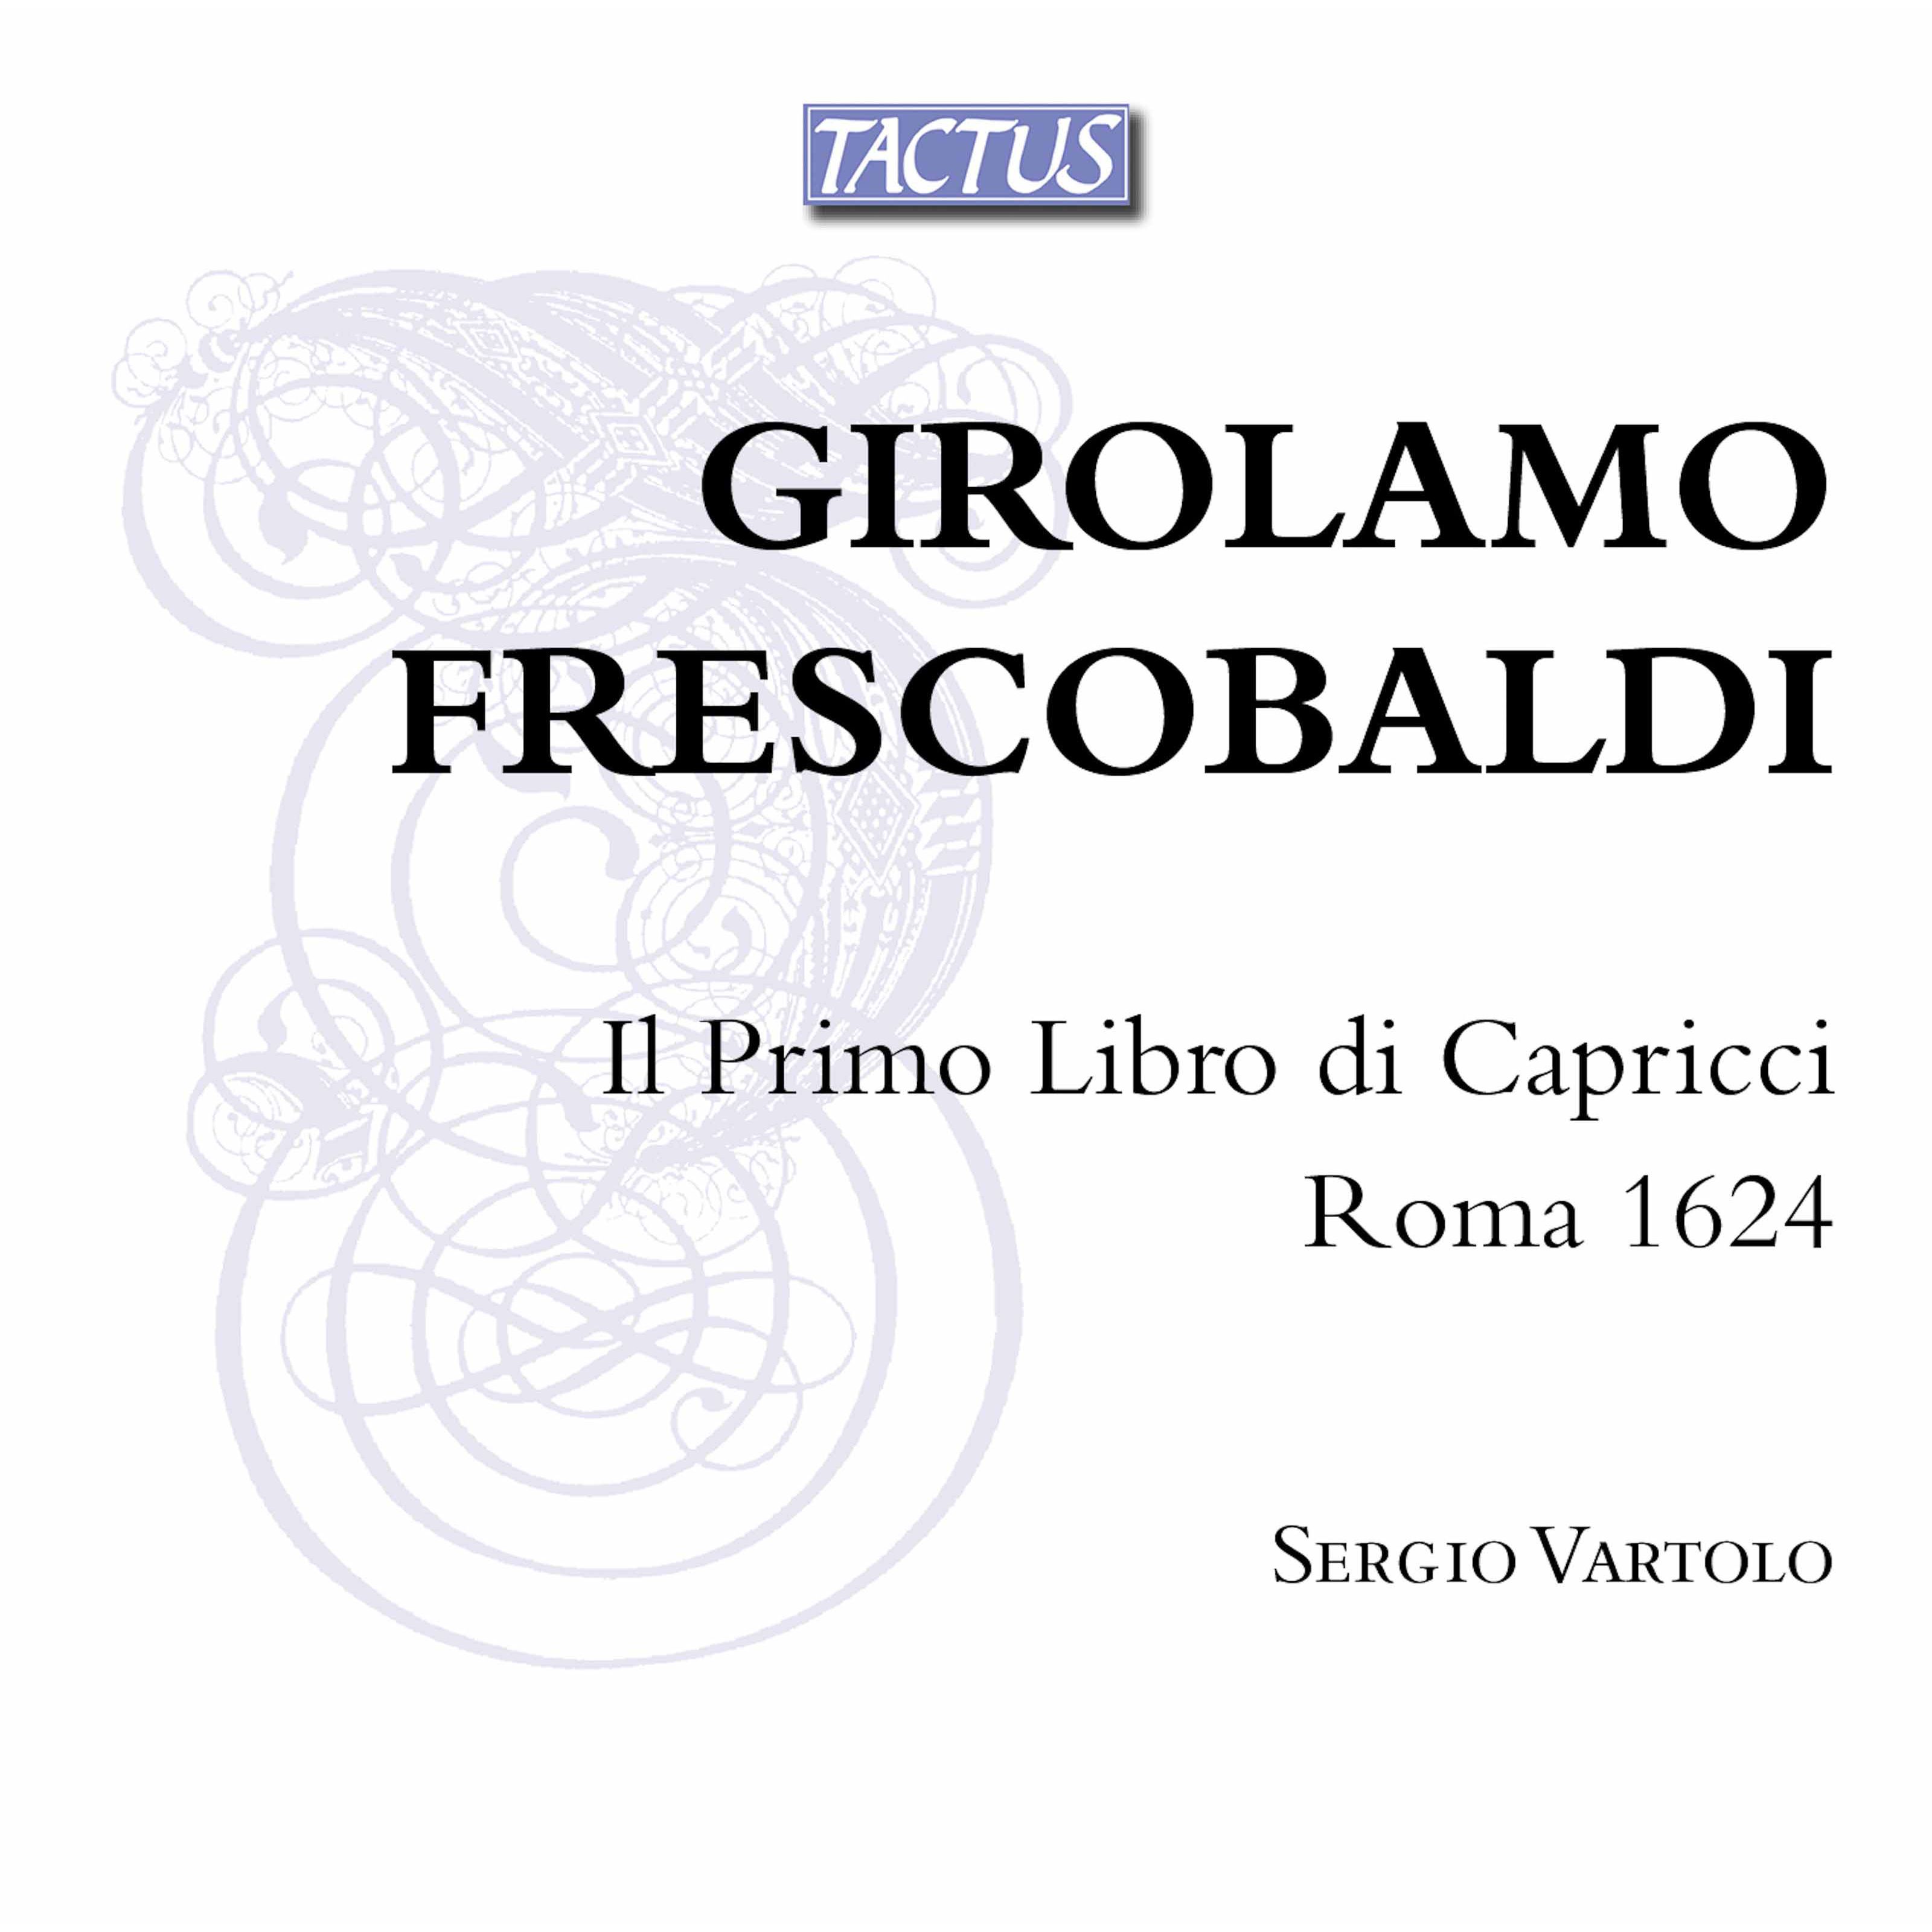 Frescobaldi - il primo libro di capricci, 1624 - Sergio Vartolo, harpsichord